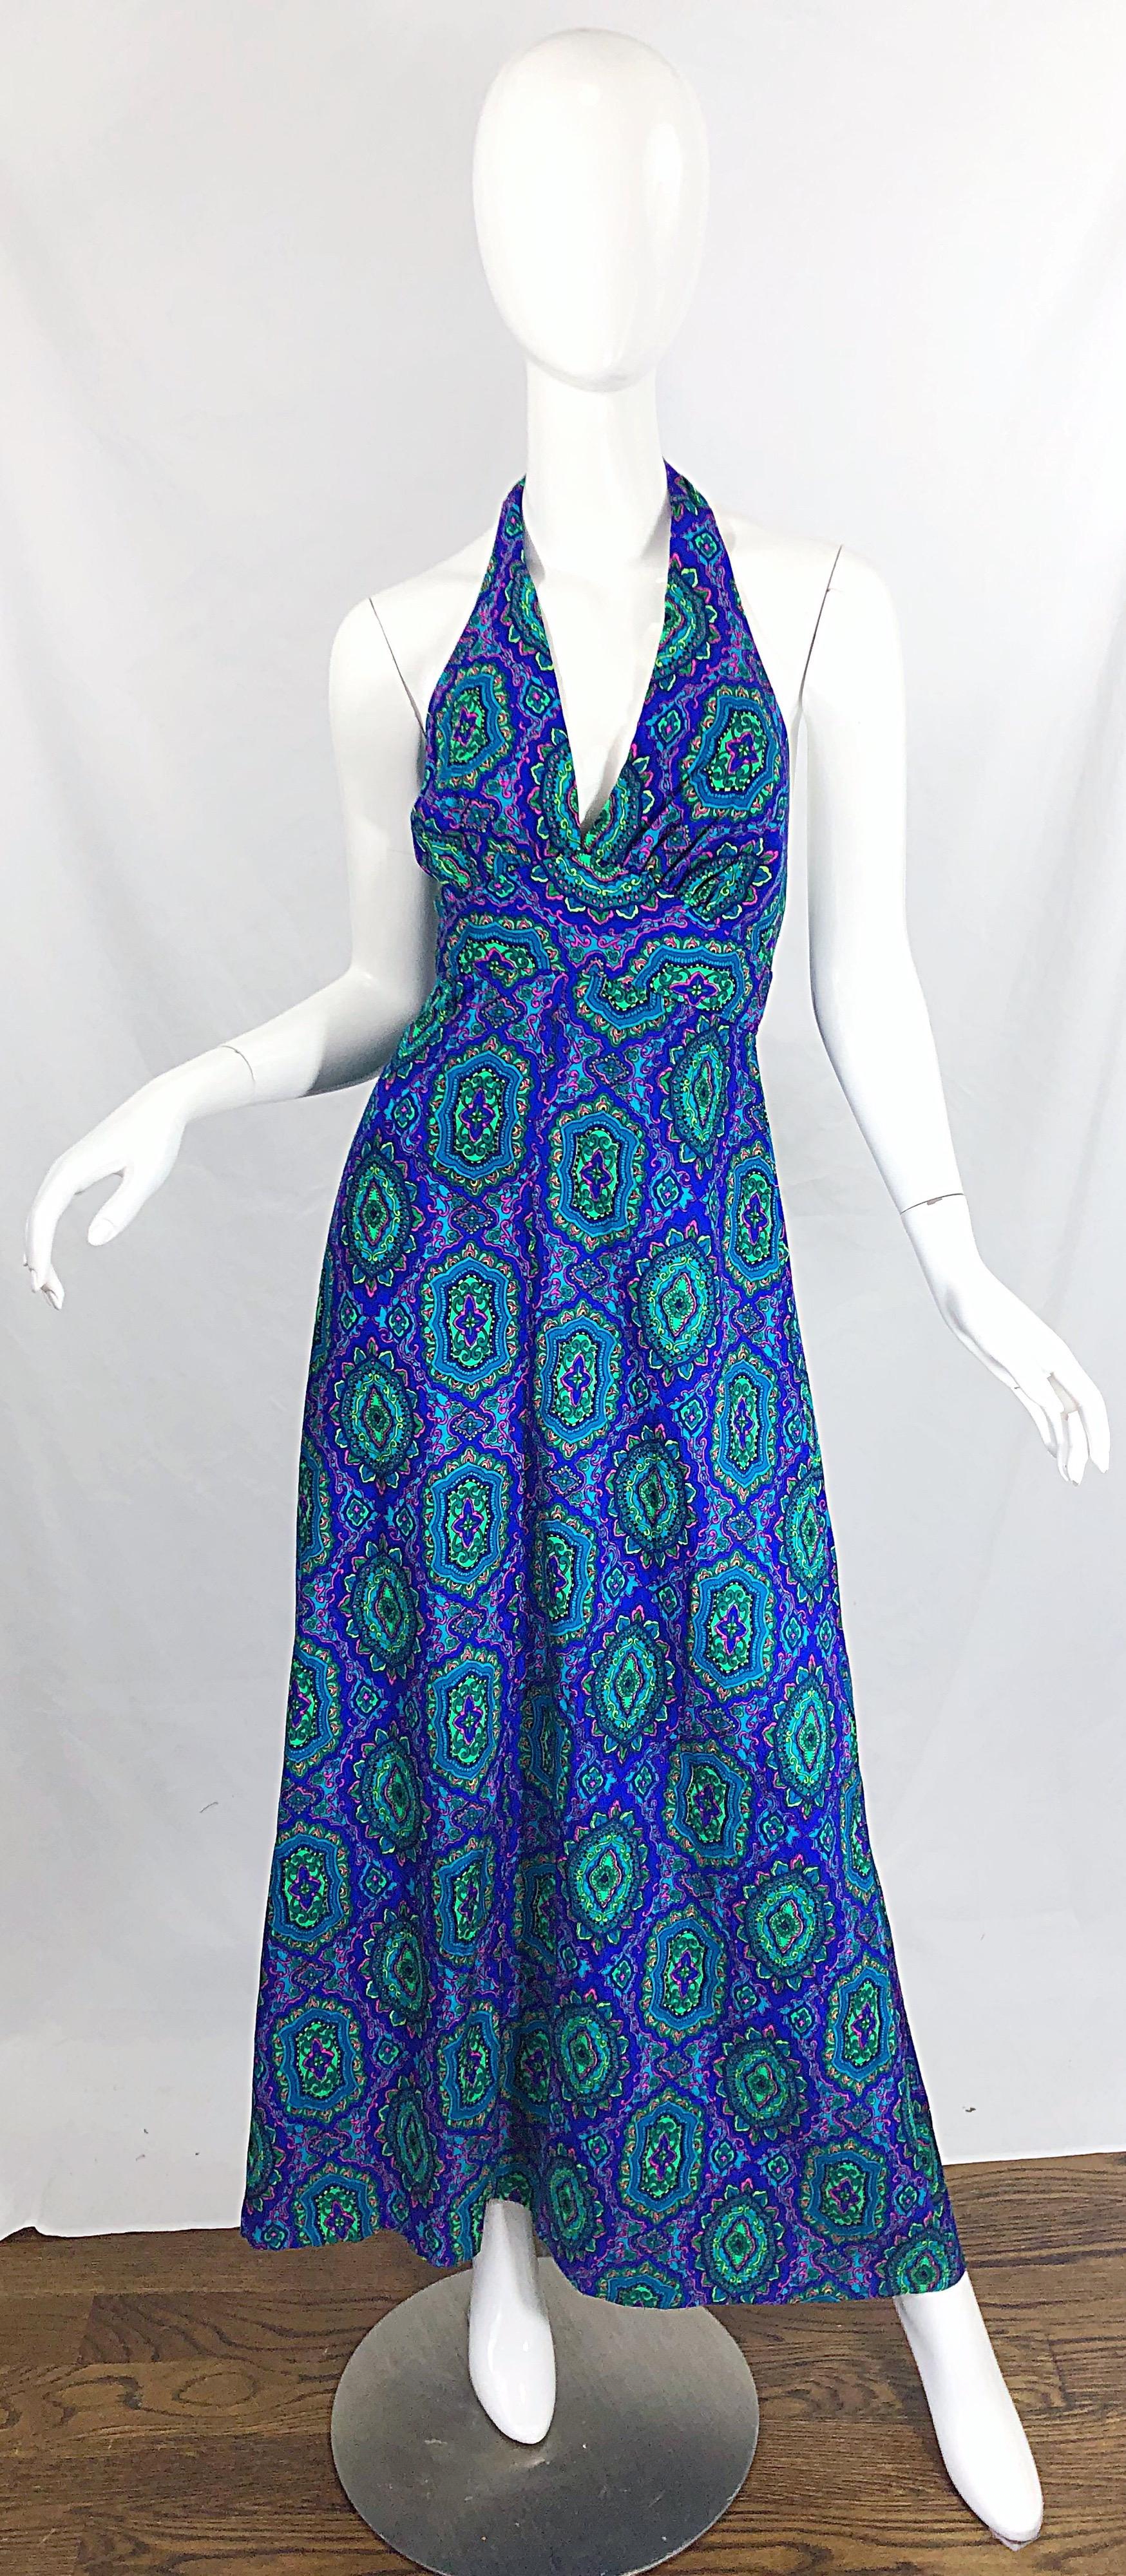 Élégante robe longue vintage des années 1970 en cachemire ! Imprimé paisley avec des couleurs vives de violet, vert, bleu, rose et sarcelle. Tissu doux en coton et rayonne. Le licou se noue dans le haut du dos. Fermeture éclair cachée dans le dos